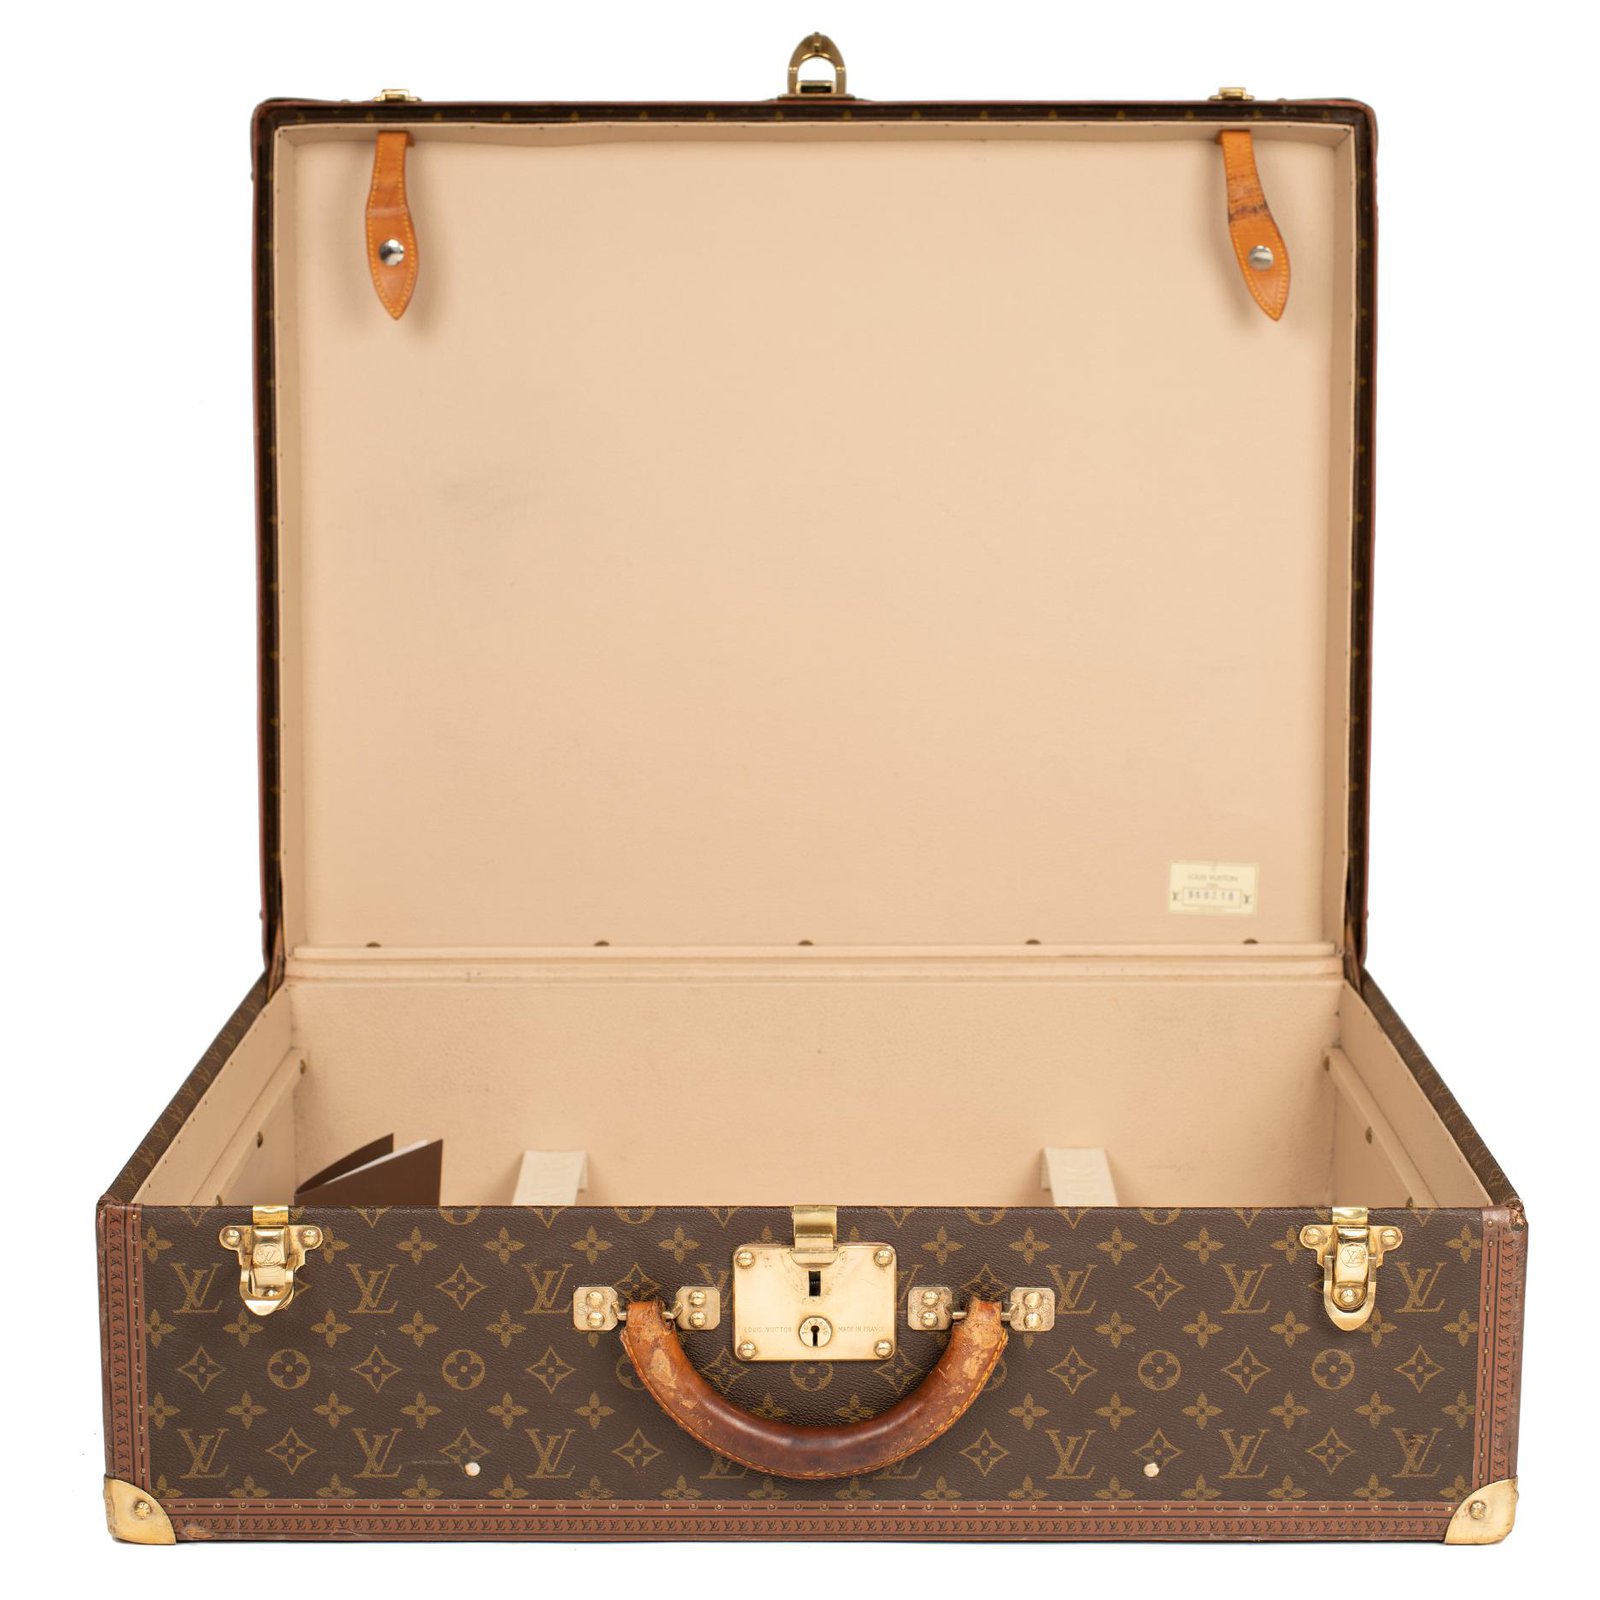 VINTAGE LOUIS VUITTON ALZER 80 SUITCASE - Pinth Vintage Luggage